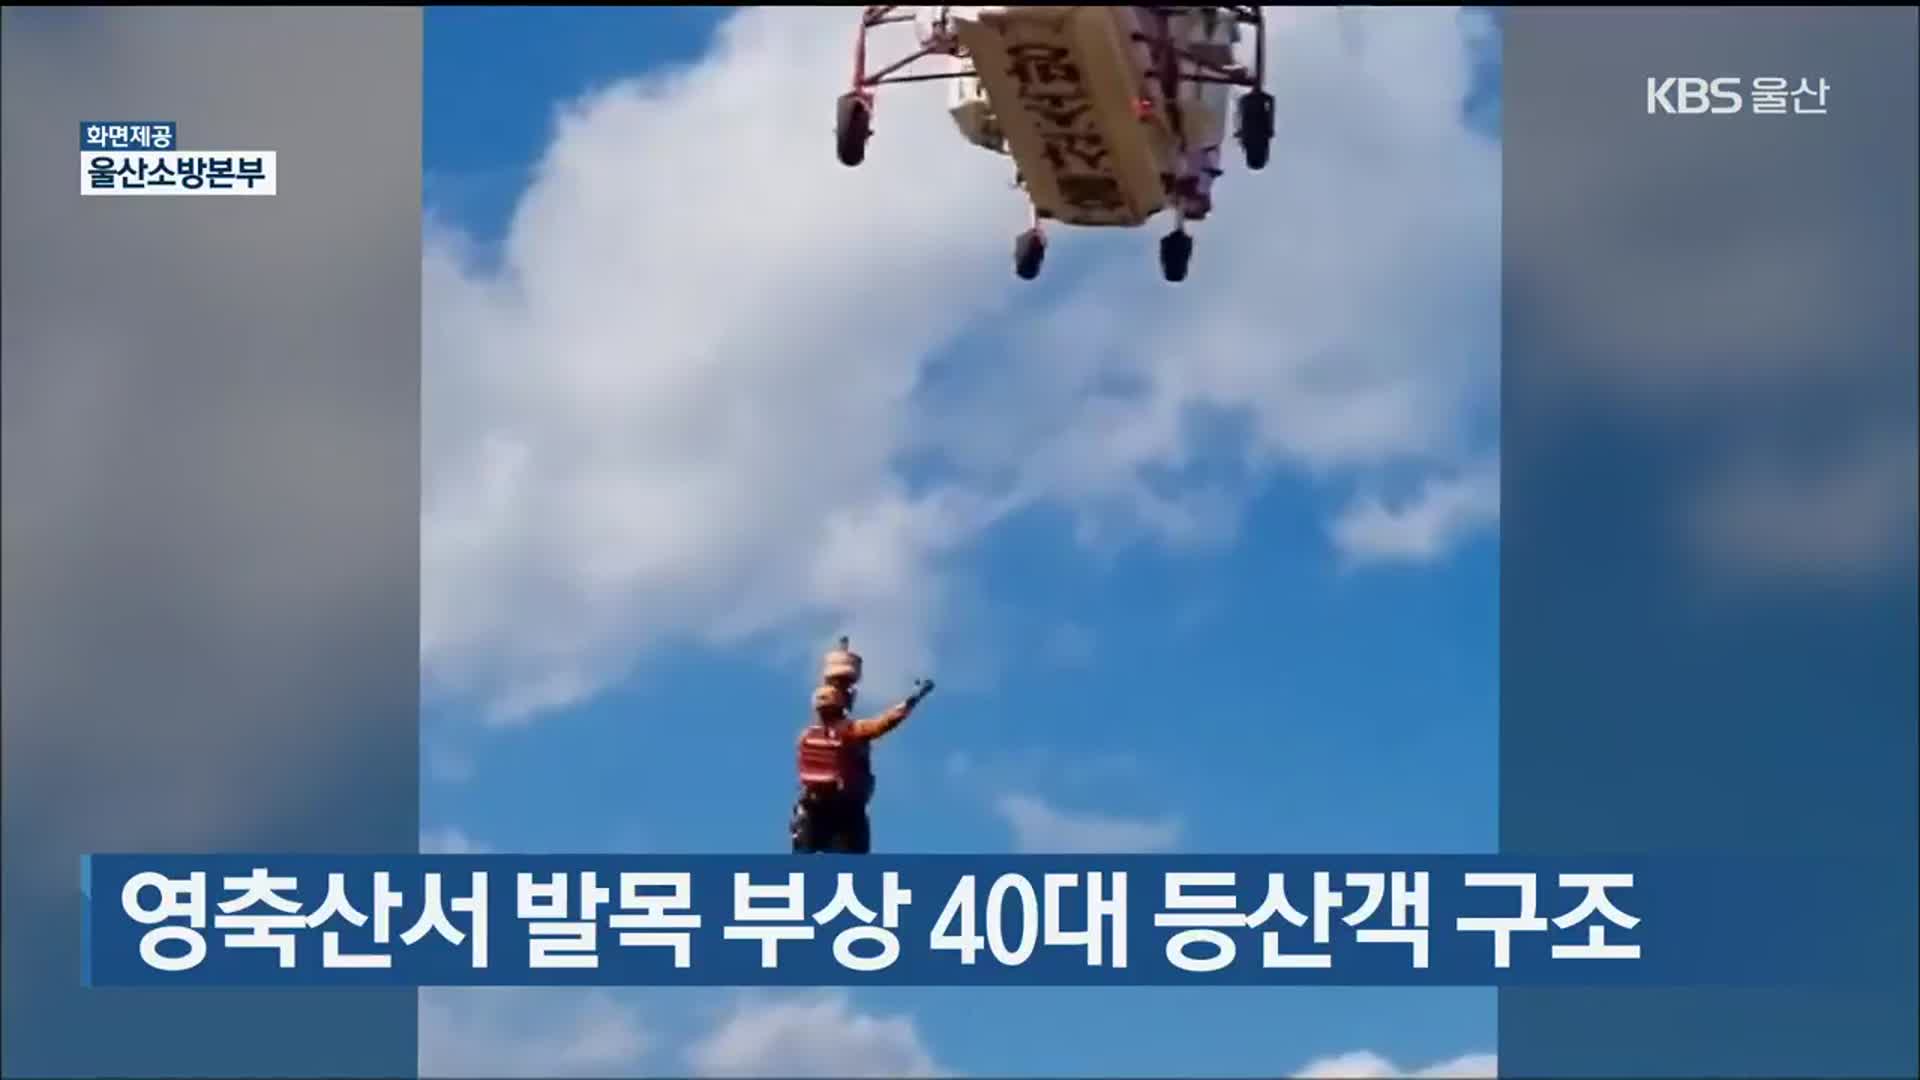 영축산서 발목 부상 40대 등산객 구조